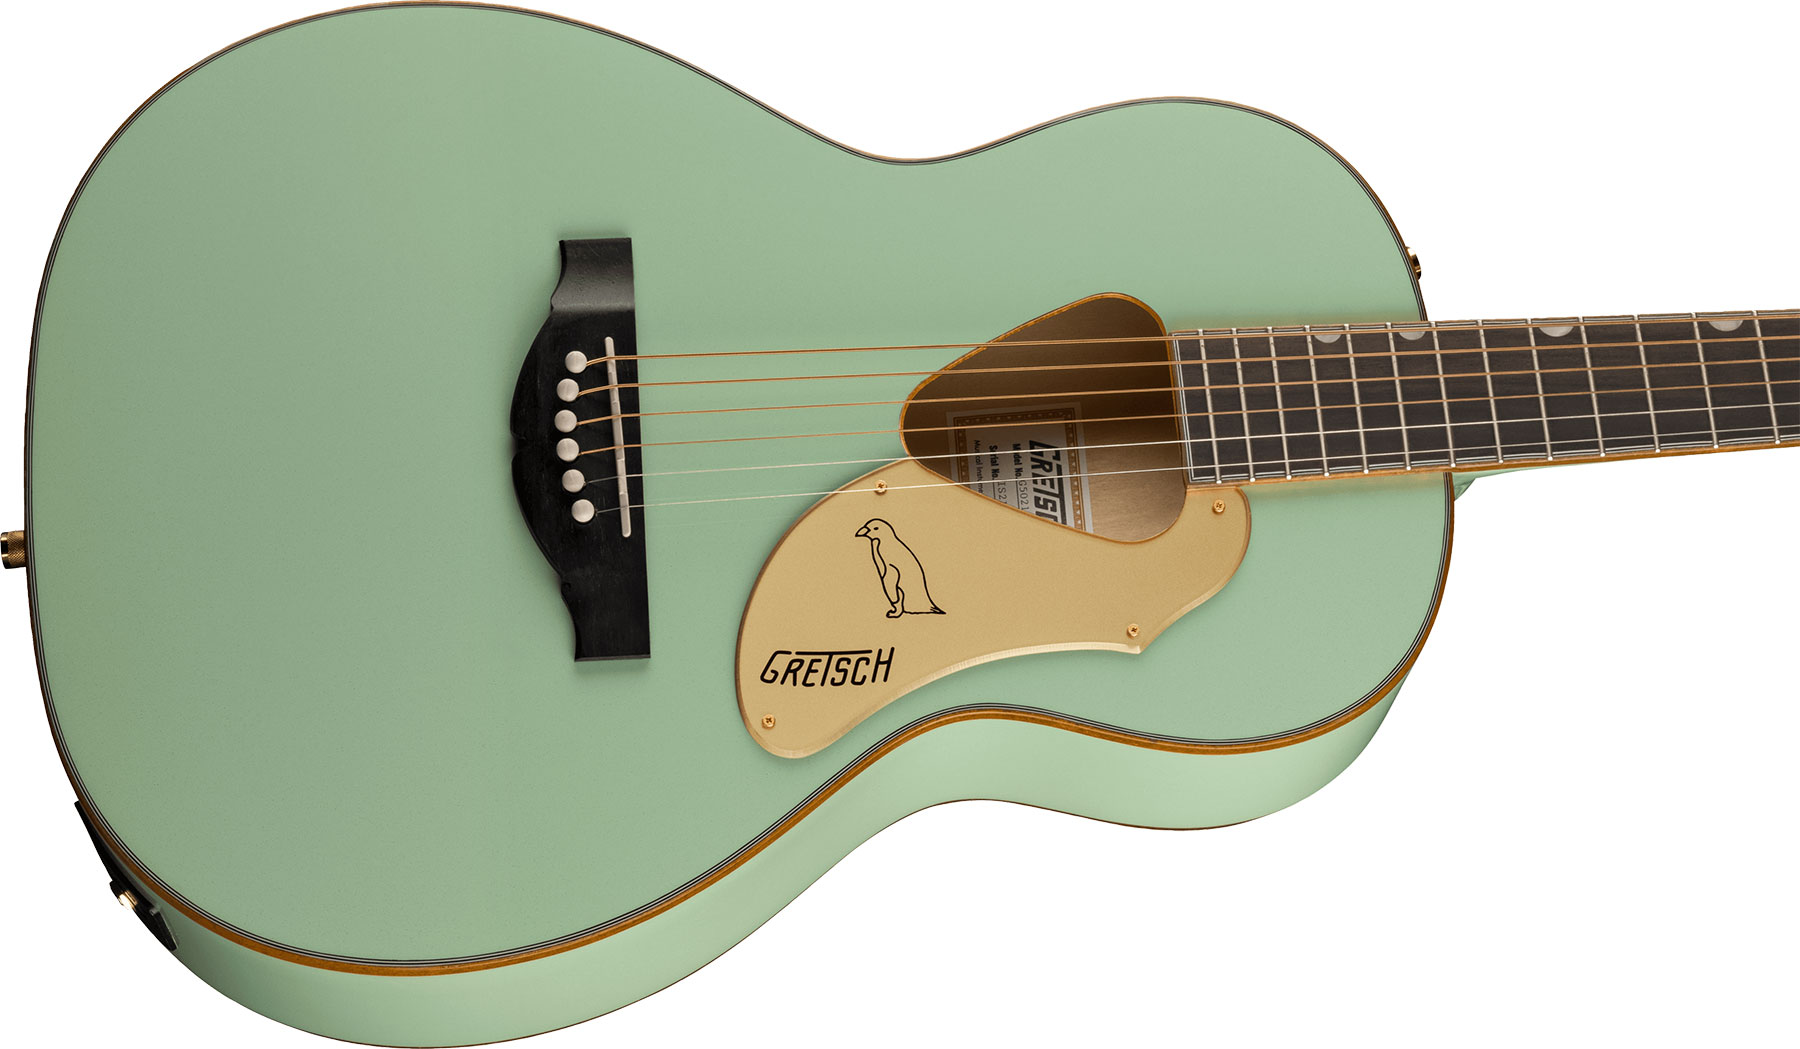 Gretsch G5021e Rancher Penguin Parlor Epicea Erable Lau - Mint Metallic - Electro acoustic guitar - Variation 2